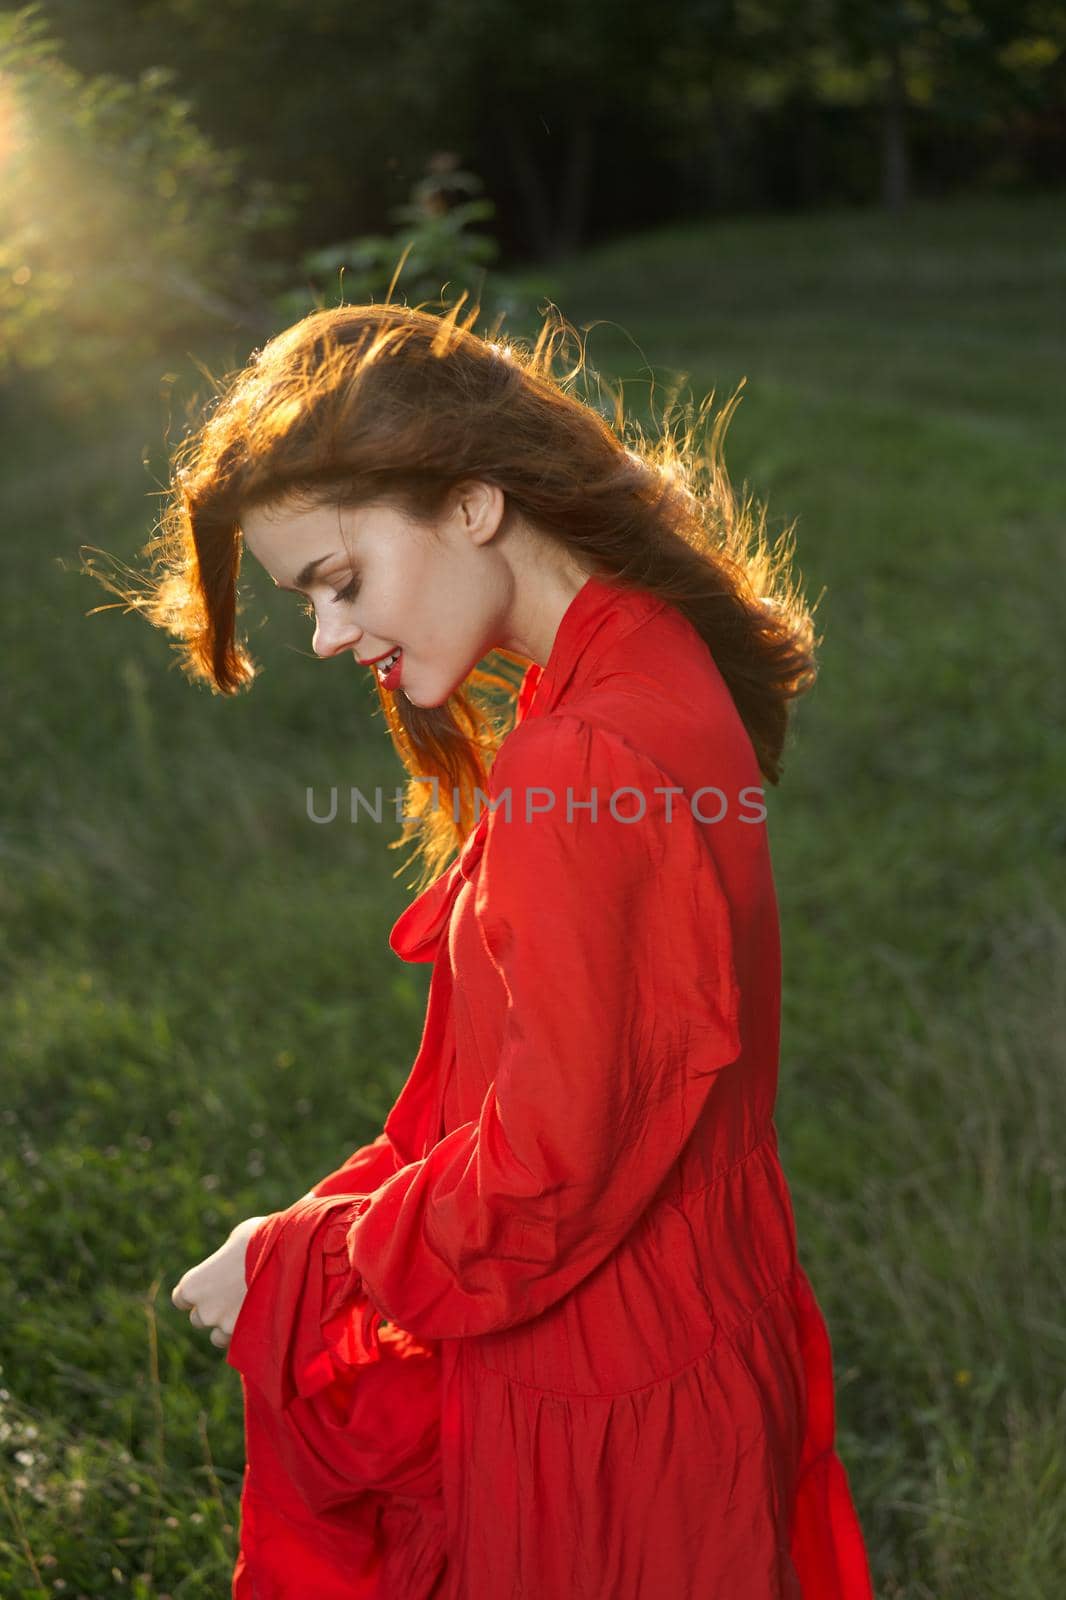 woman in red dress posing nature sun fun by Vichizh